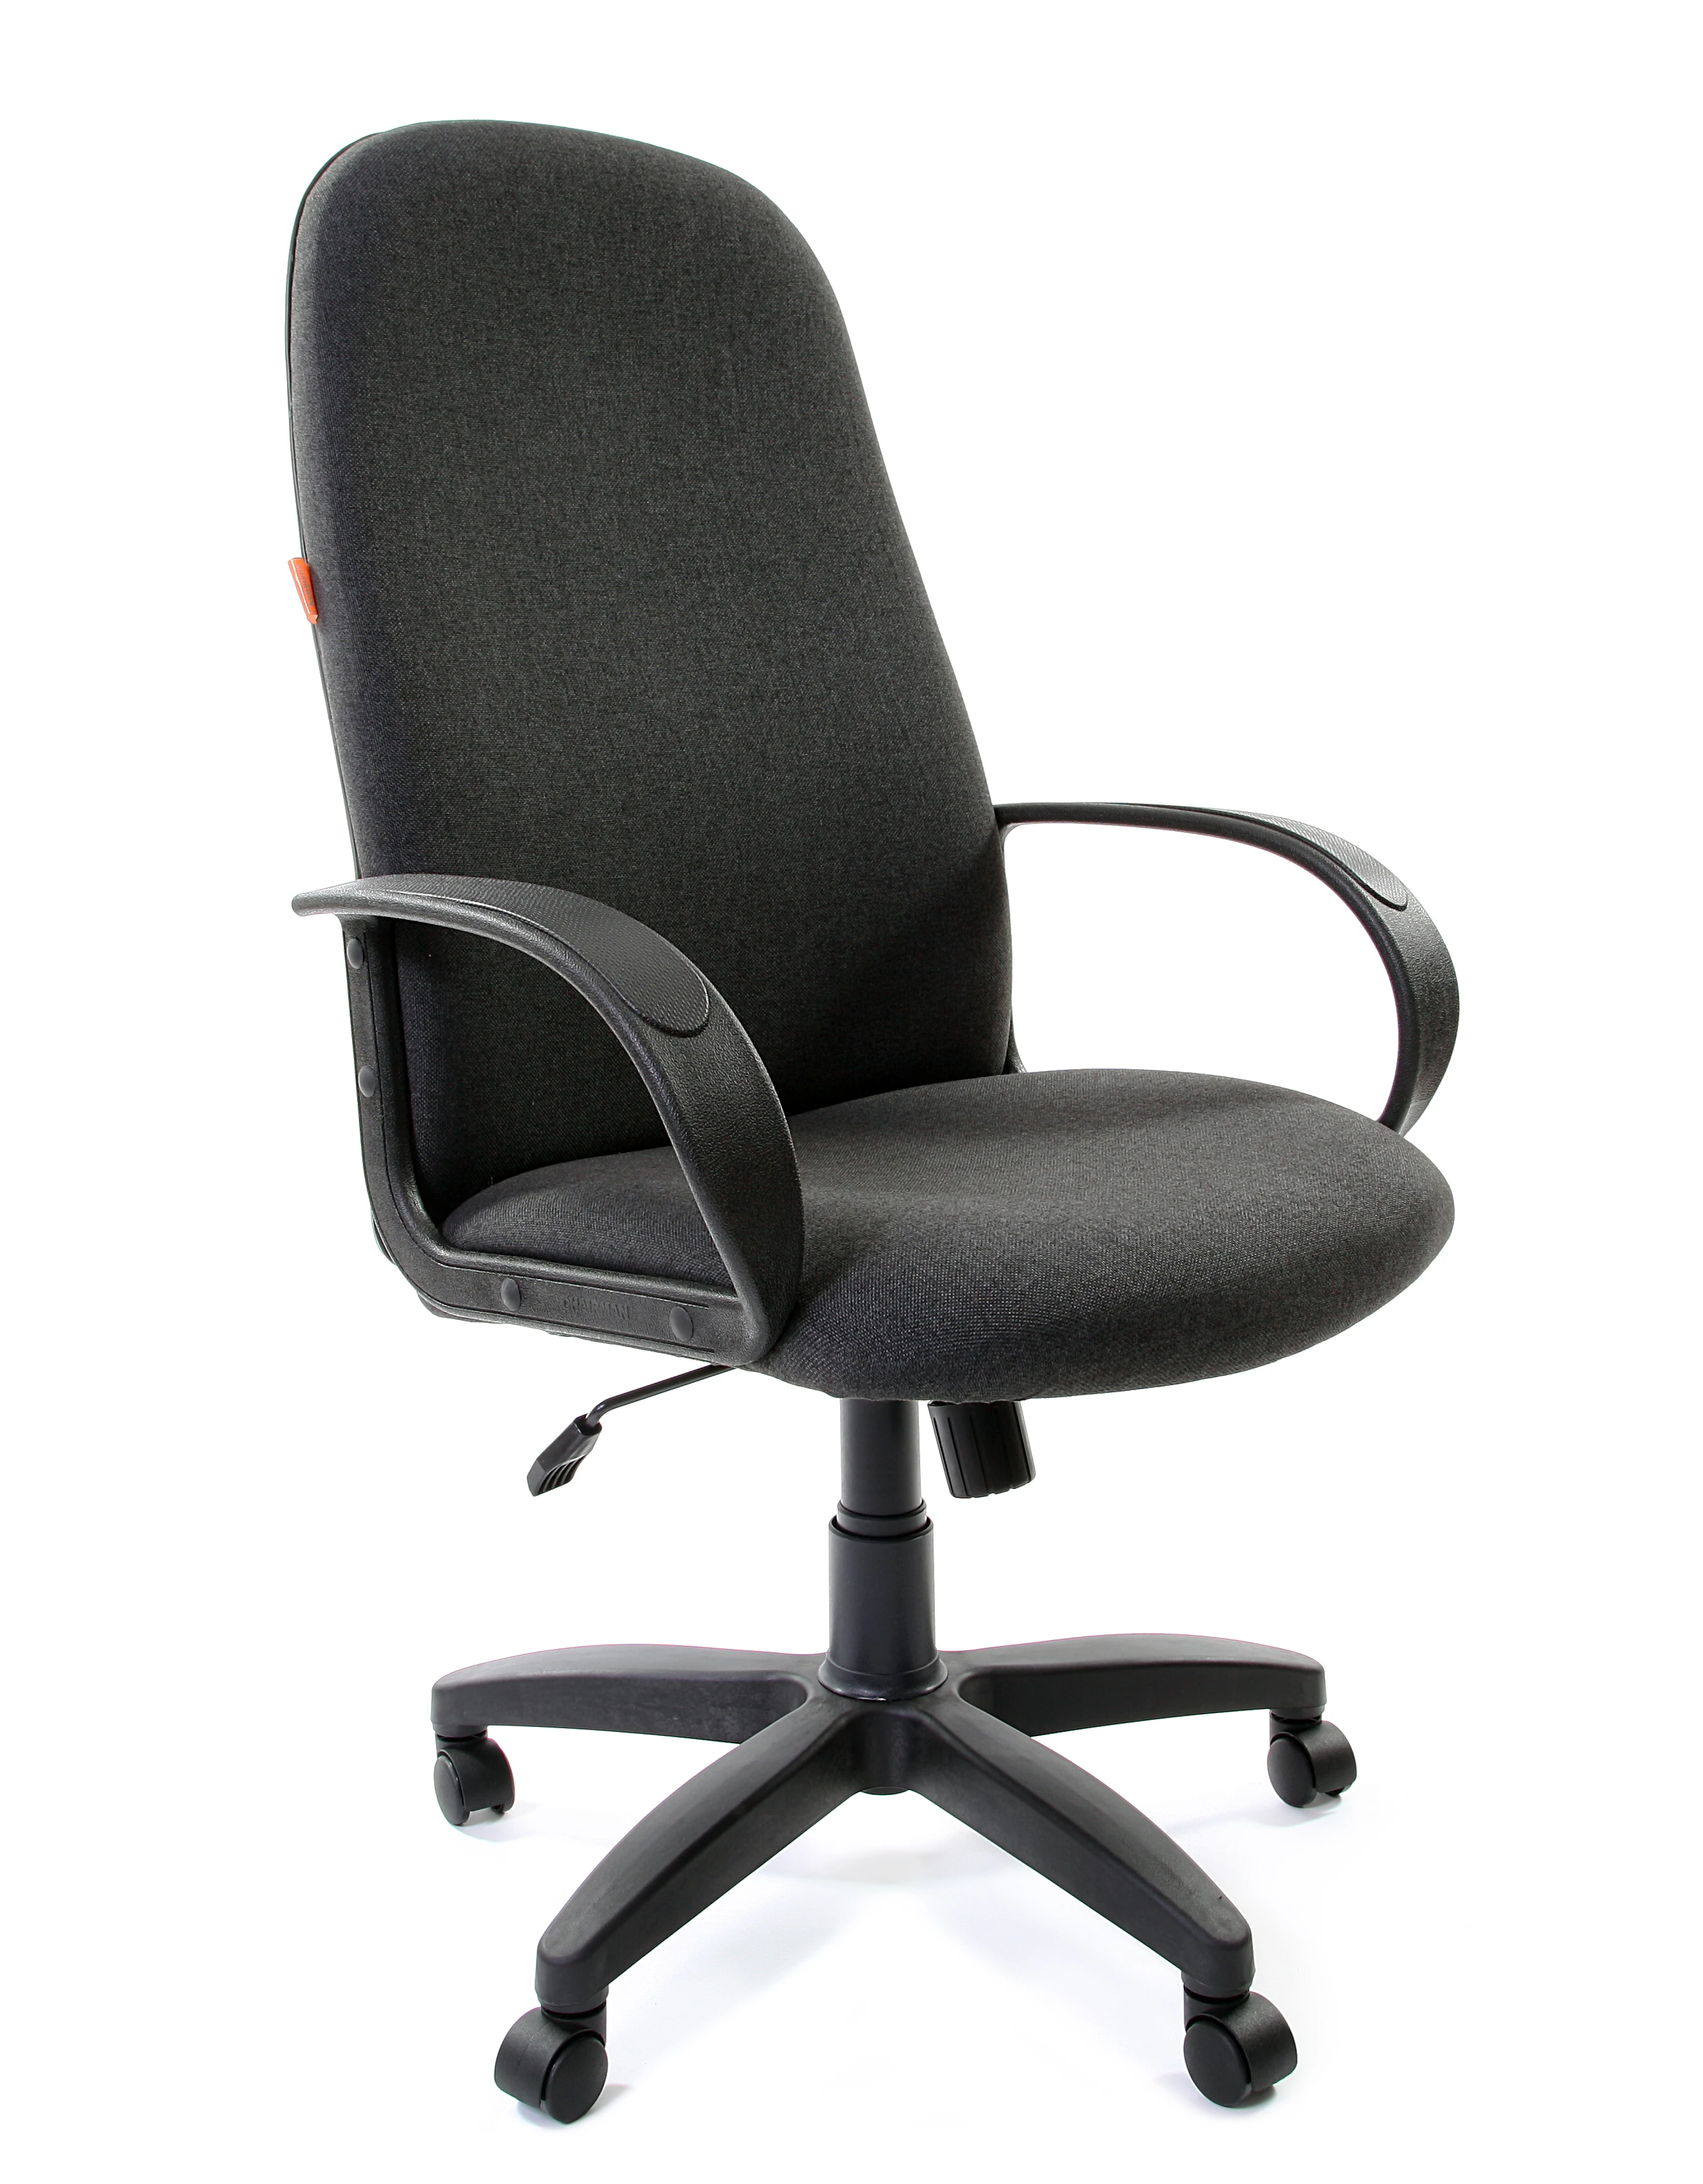 Кресло офисное компьютерное Chairman 279 для дома офиса|Офисные стулья| |